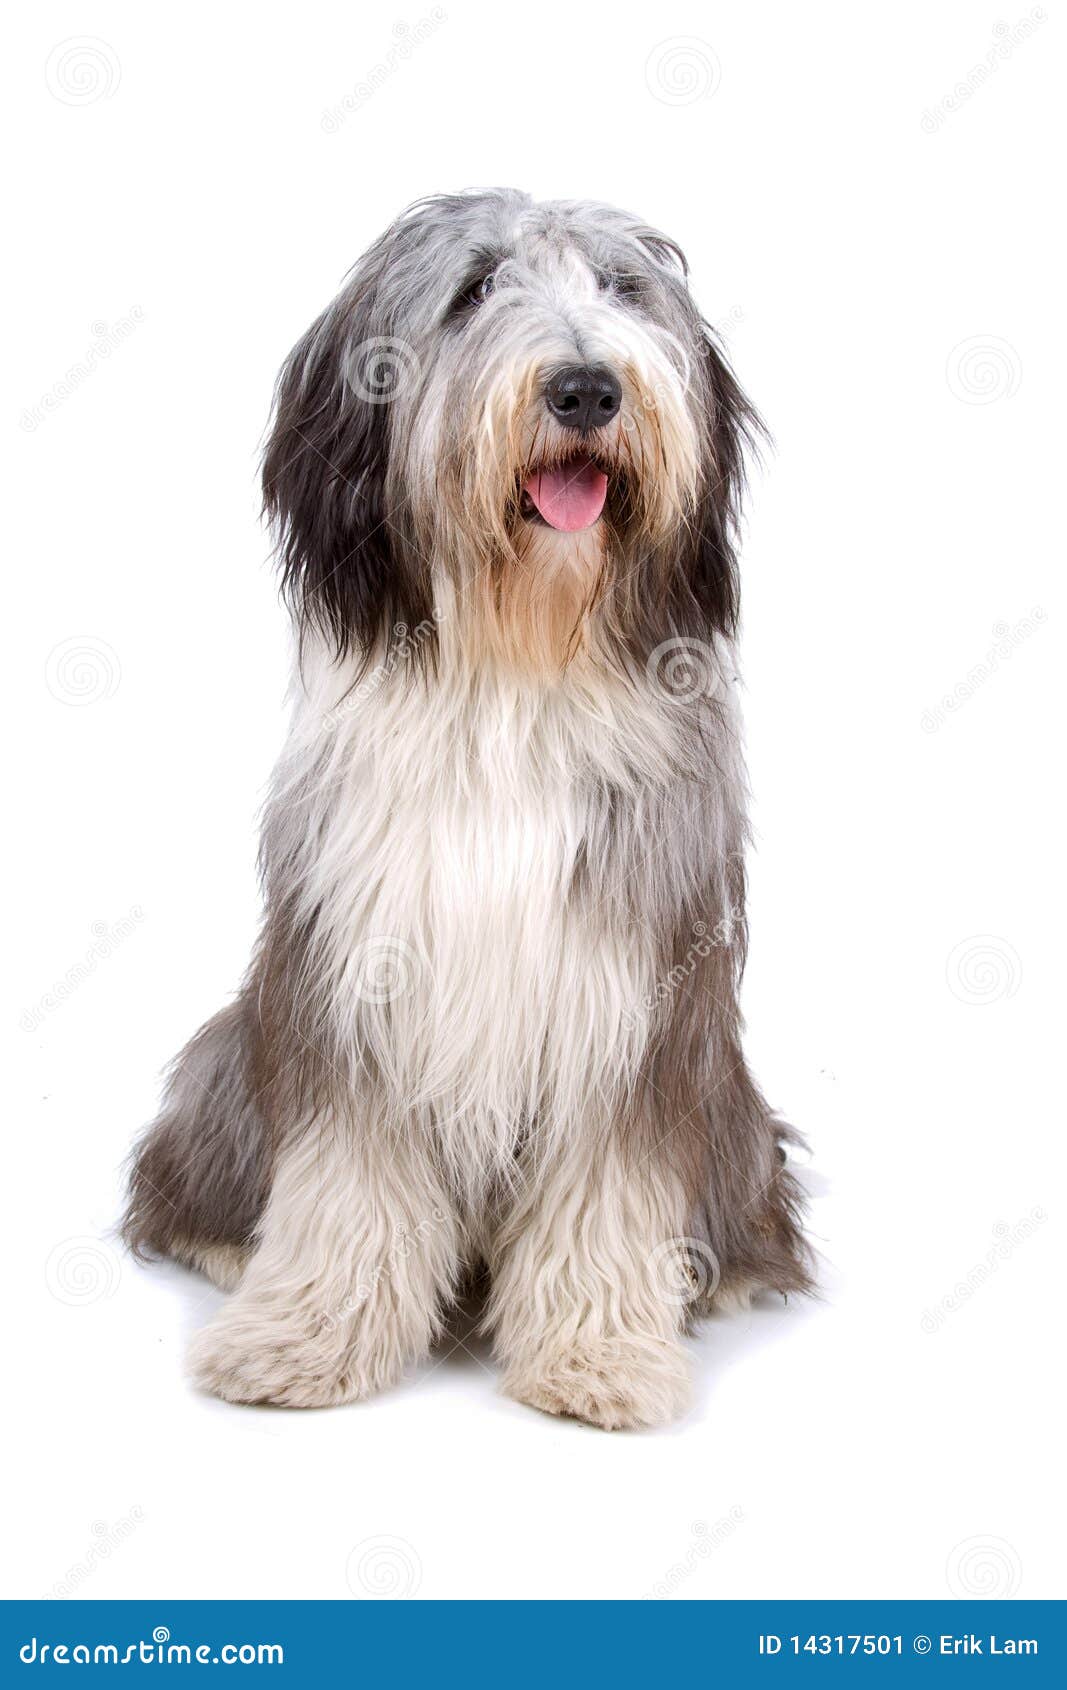 BOBTAIL (Viejo pastor inglés): precio, características y cuidados  Perros pastor  ingles, Antiguo perro pastor inglés, Razas de perros grandes